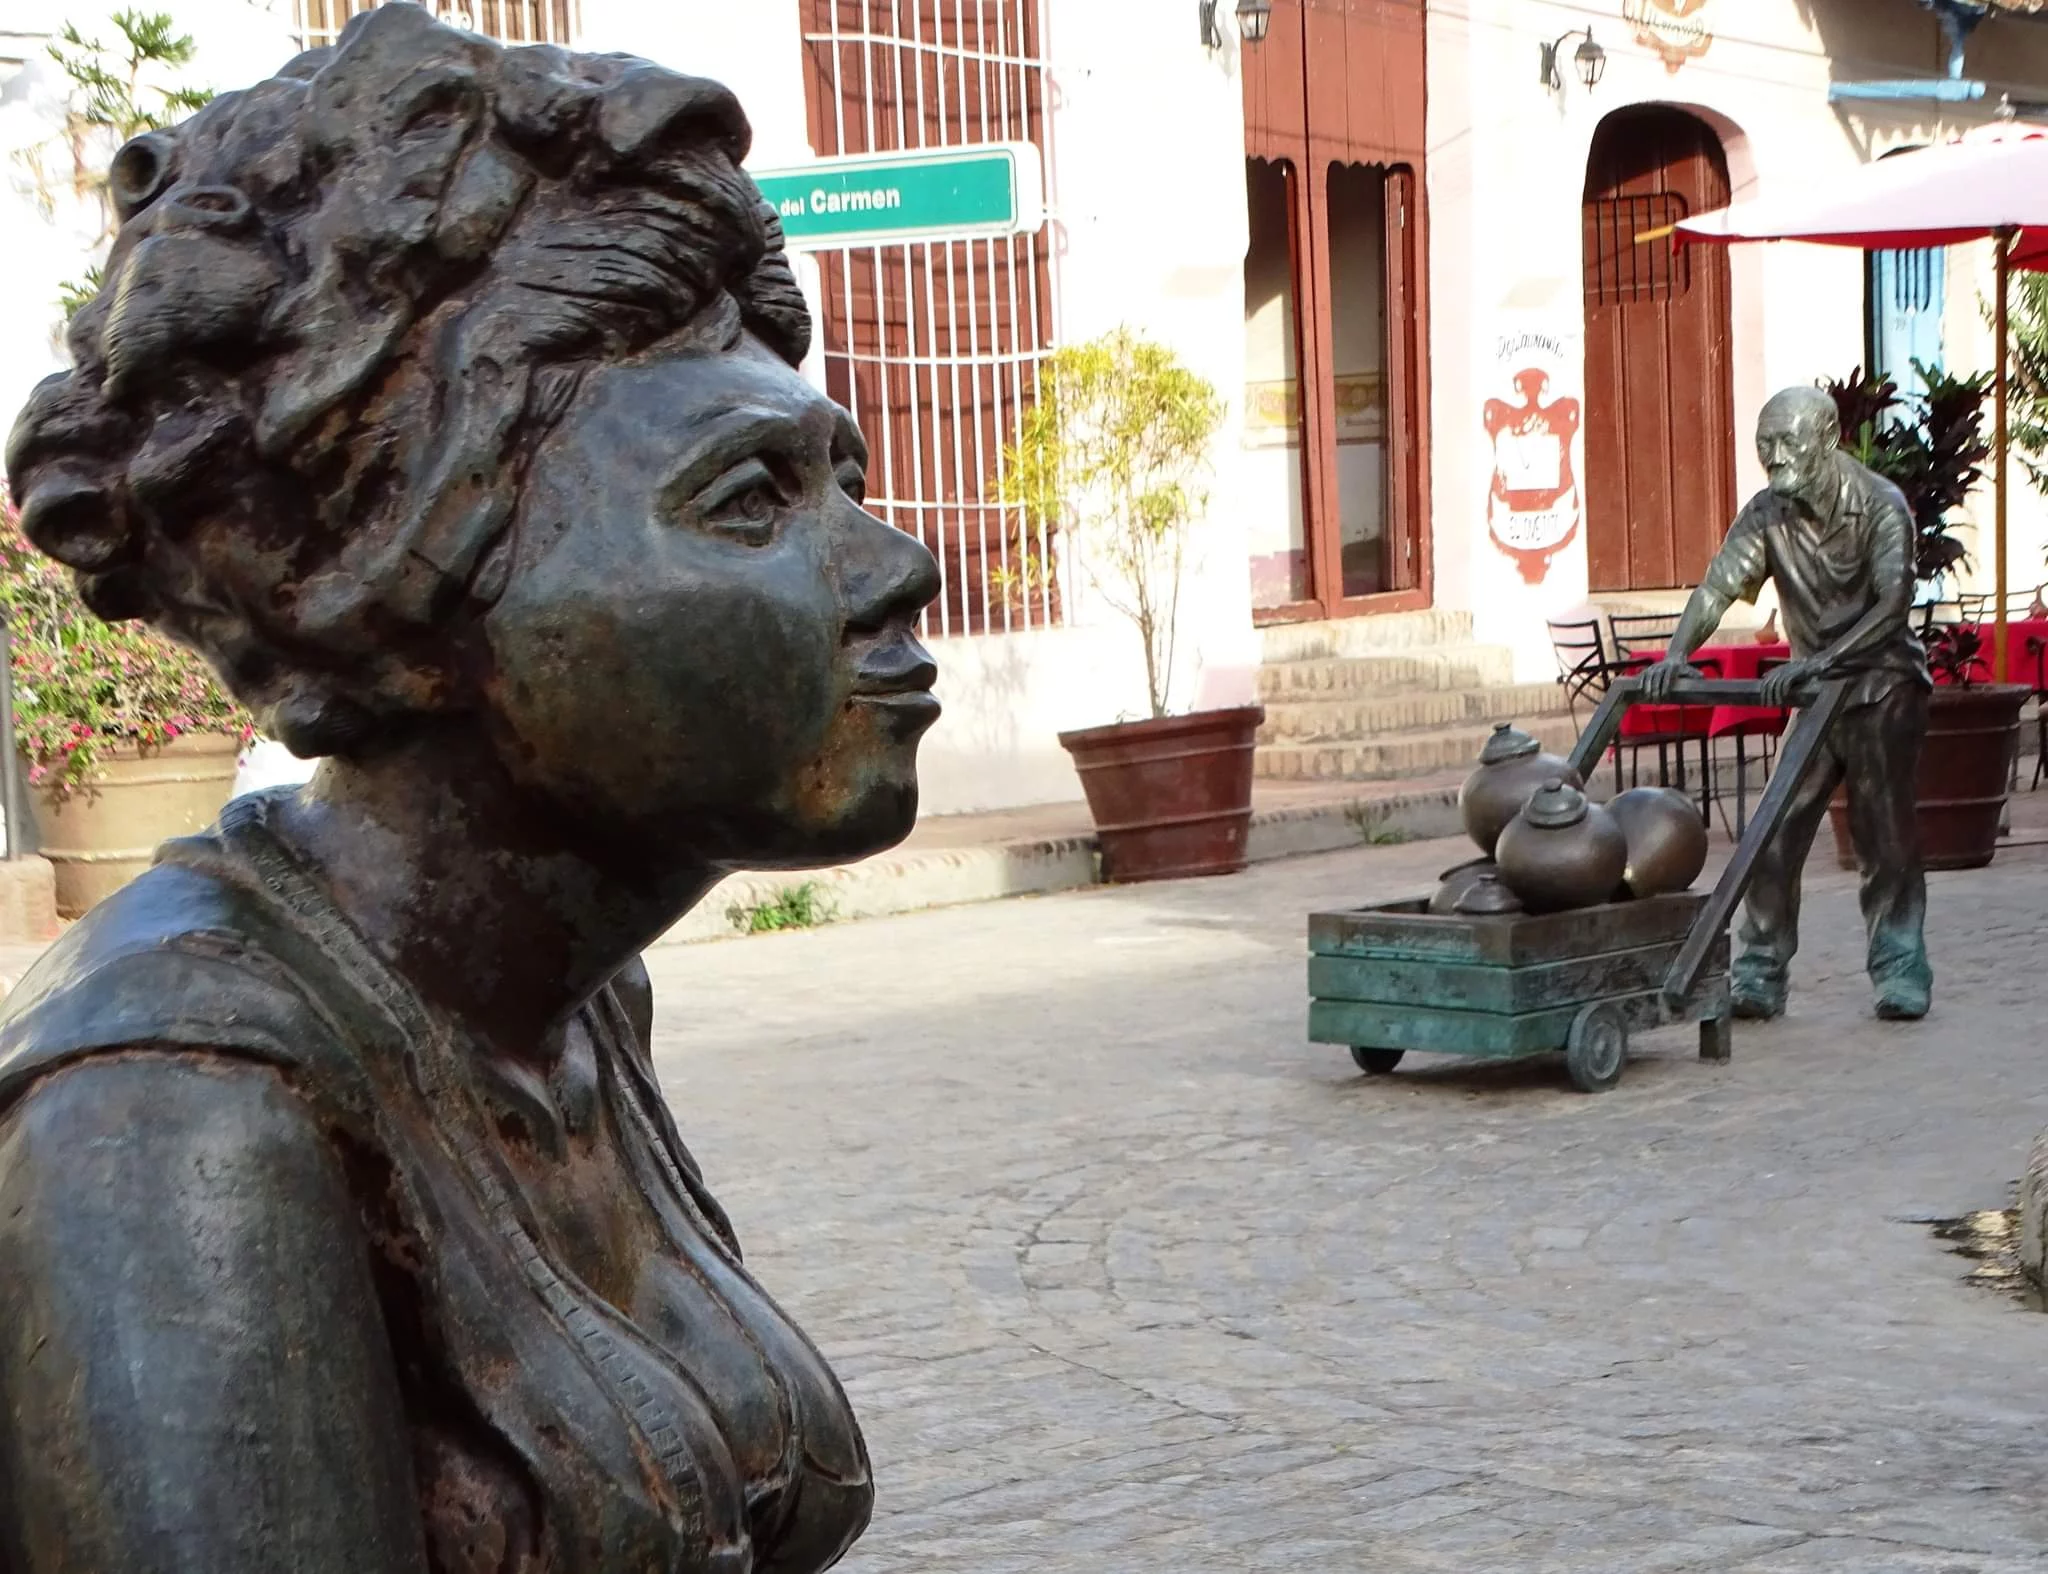 Plaza del Carmen: emblematic place full of traditions and Cuban culture 